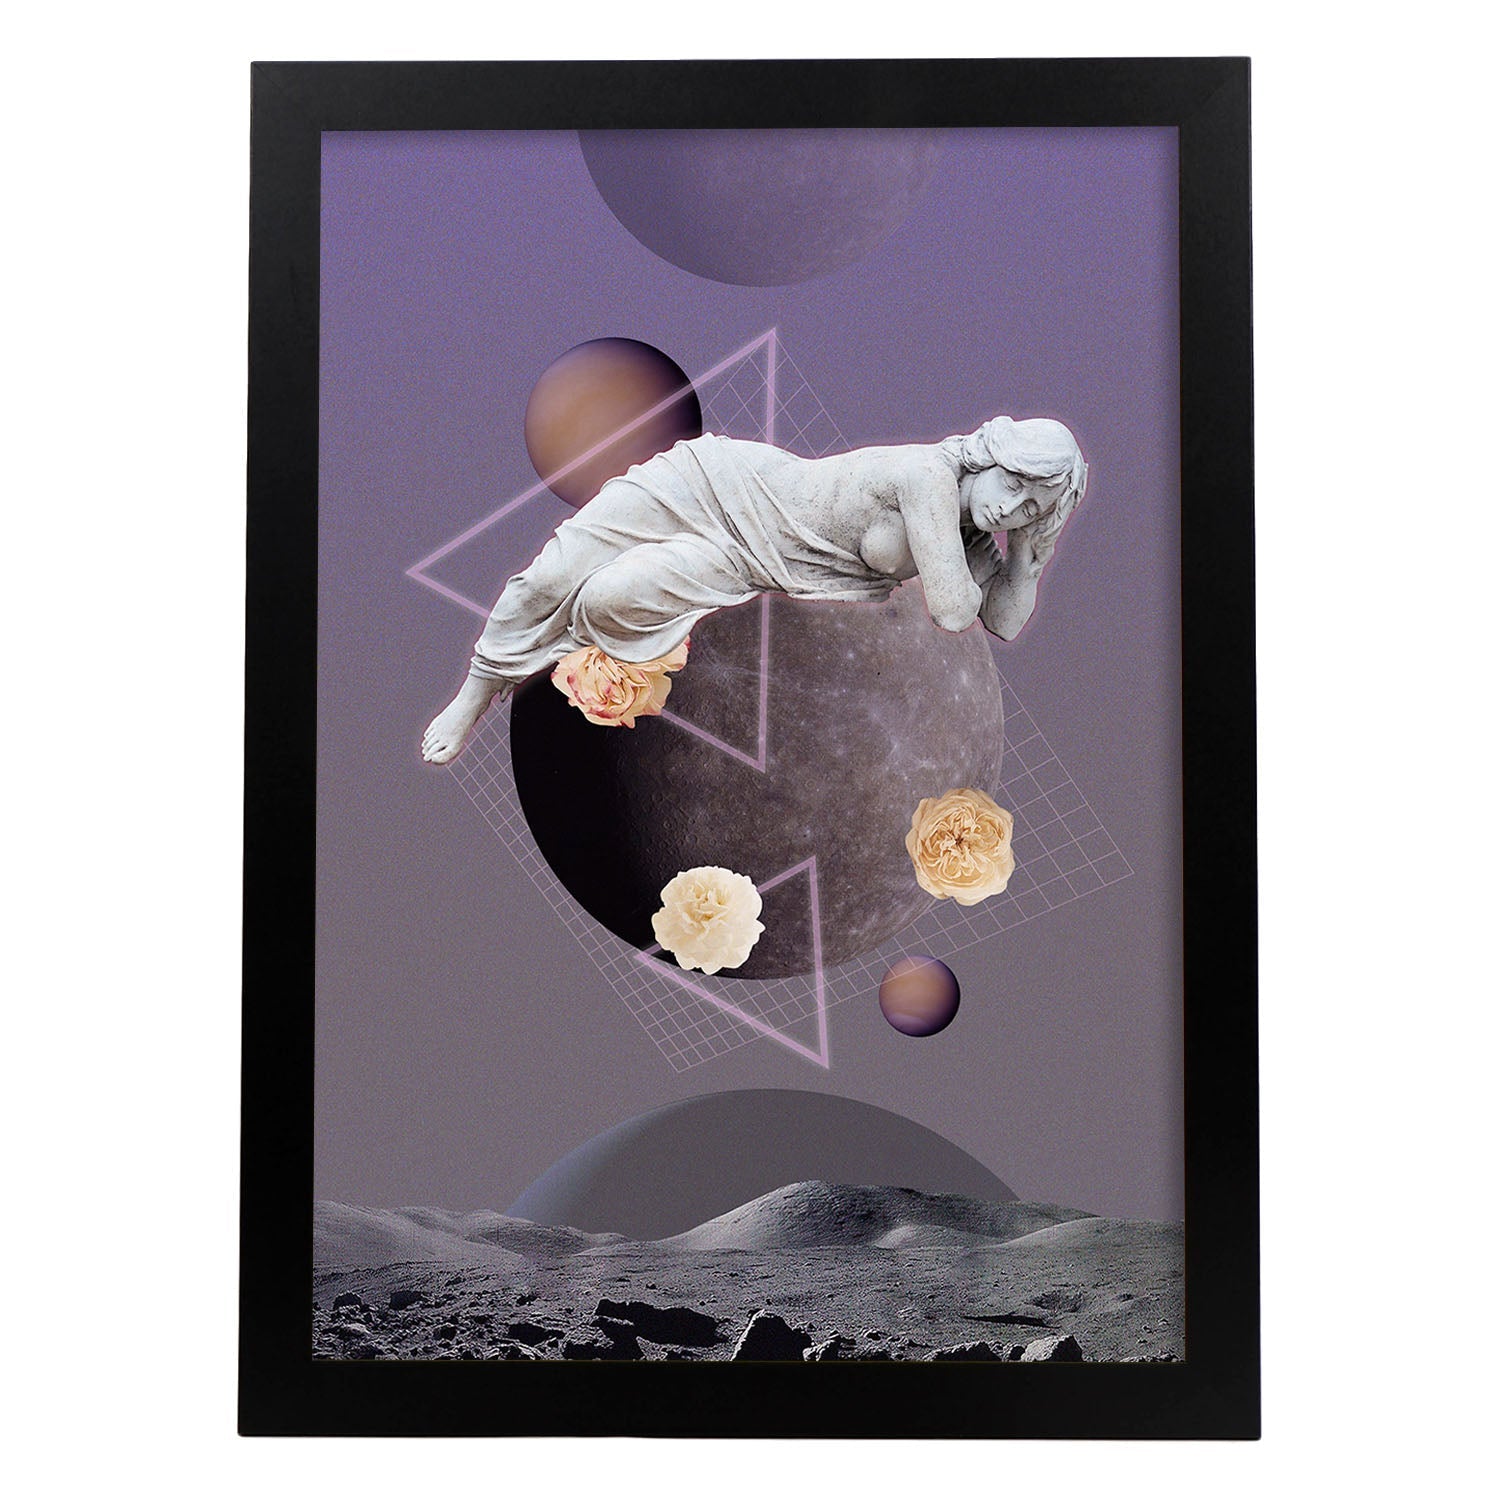 Lamina artistica decorativa con ilustración de Collage surrealista 27 estilo Collage-Artwork-Nacnic-A4-Marco Negro-Nacnic Estudio SL